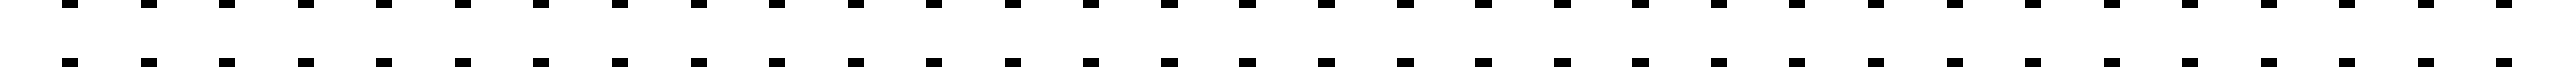 Пример написания русского алфавита шрифтом Barcade Condensed